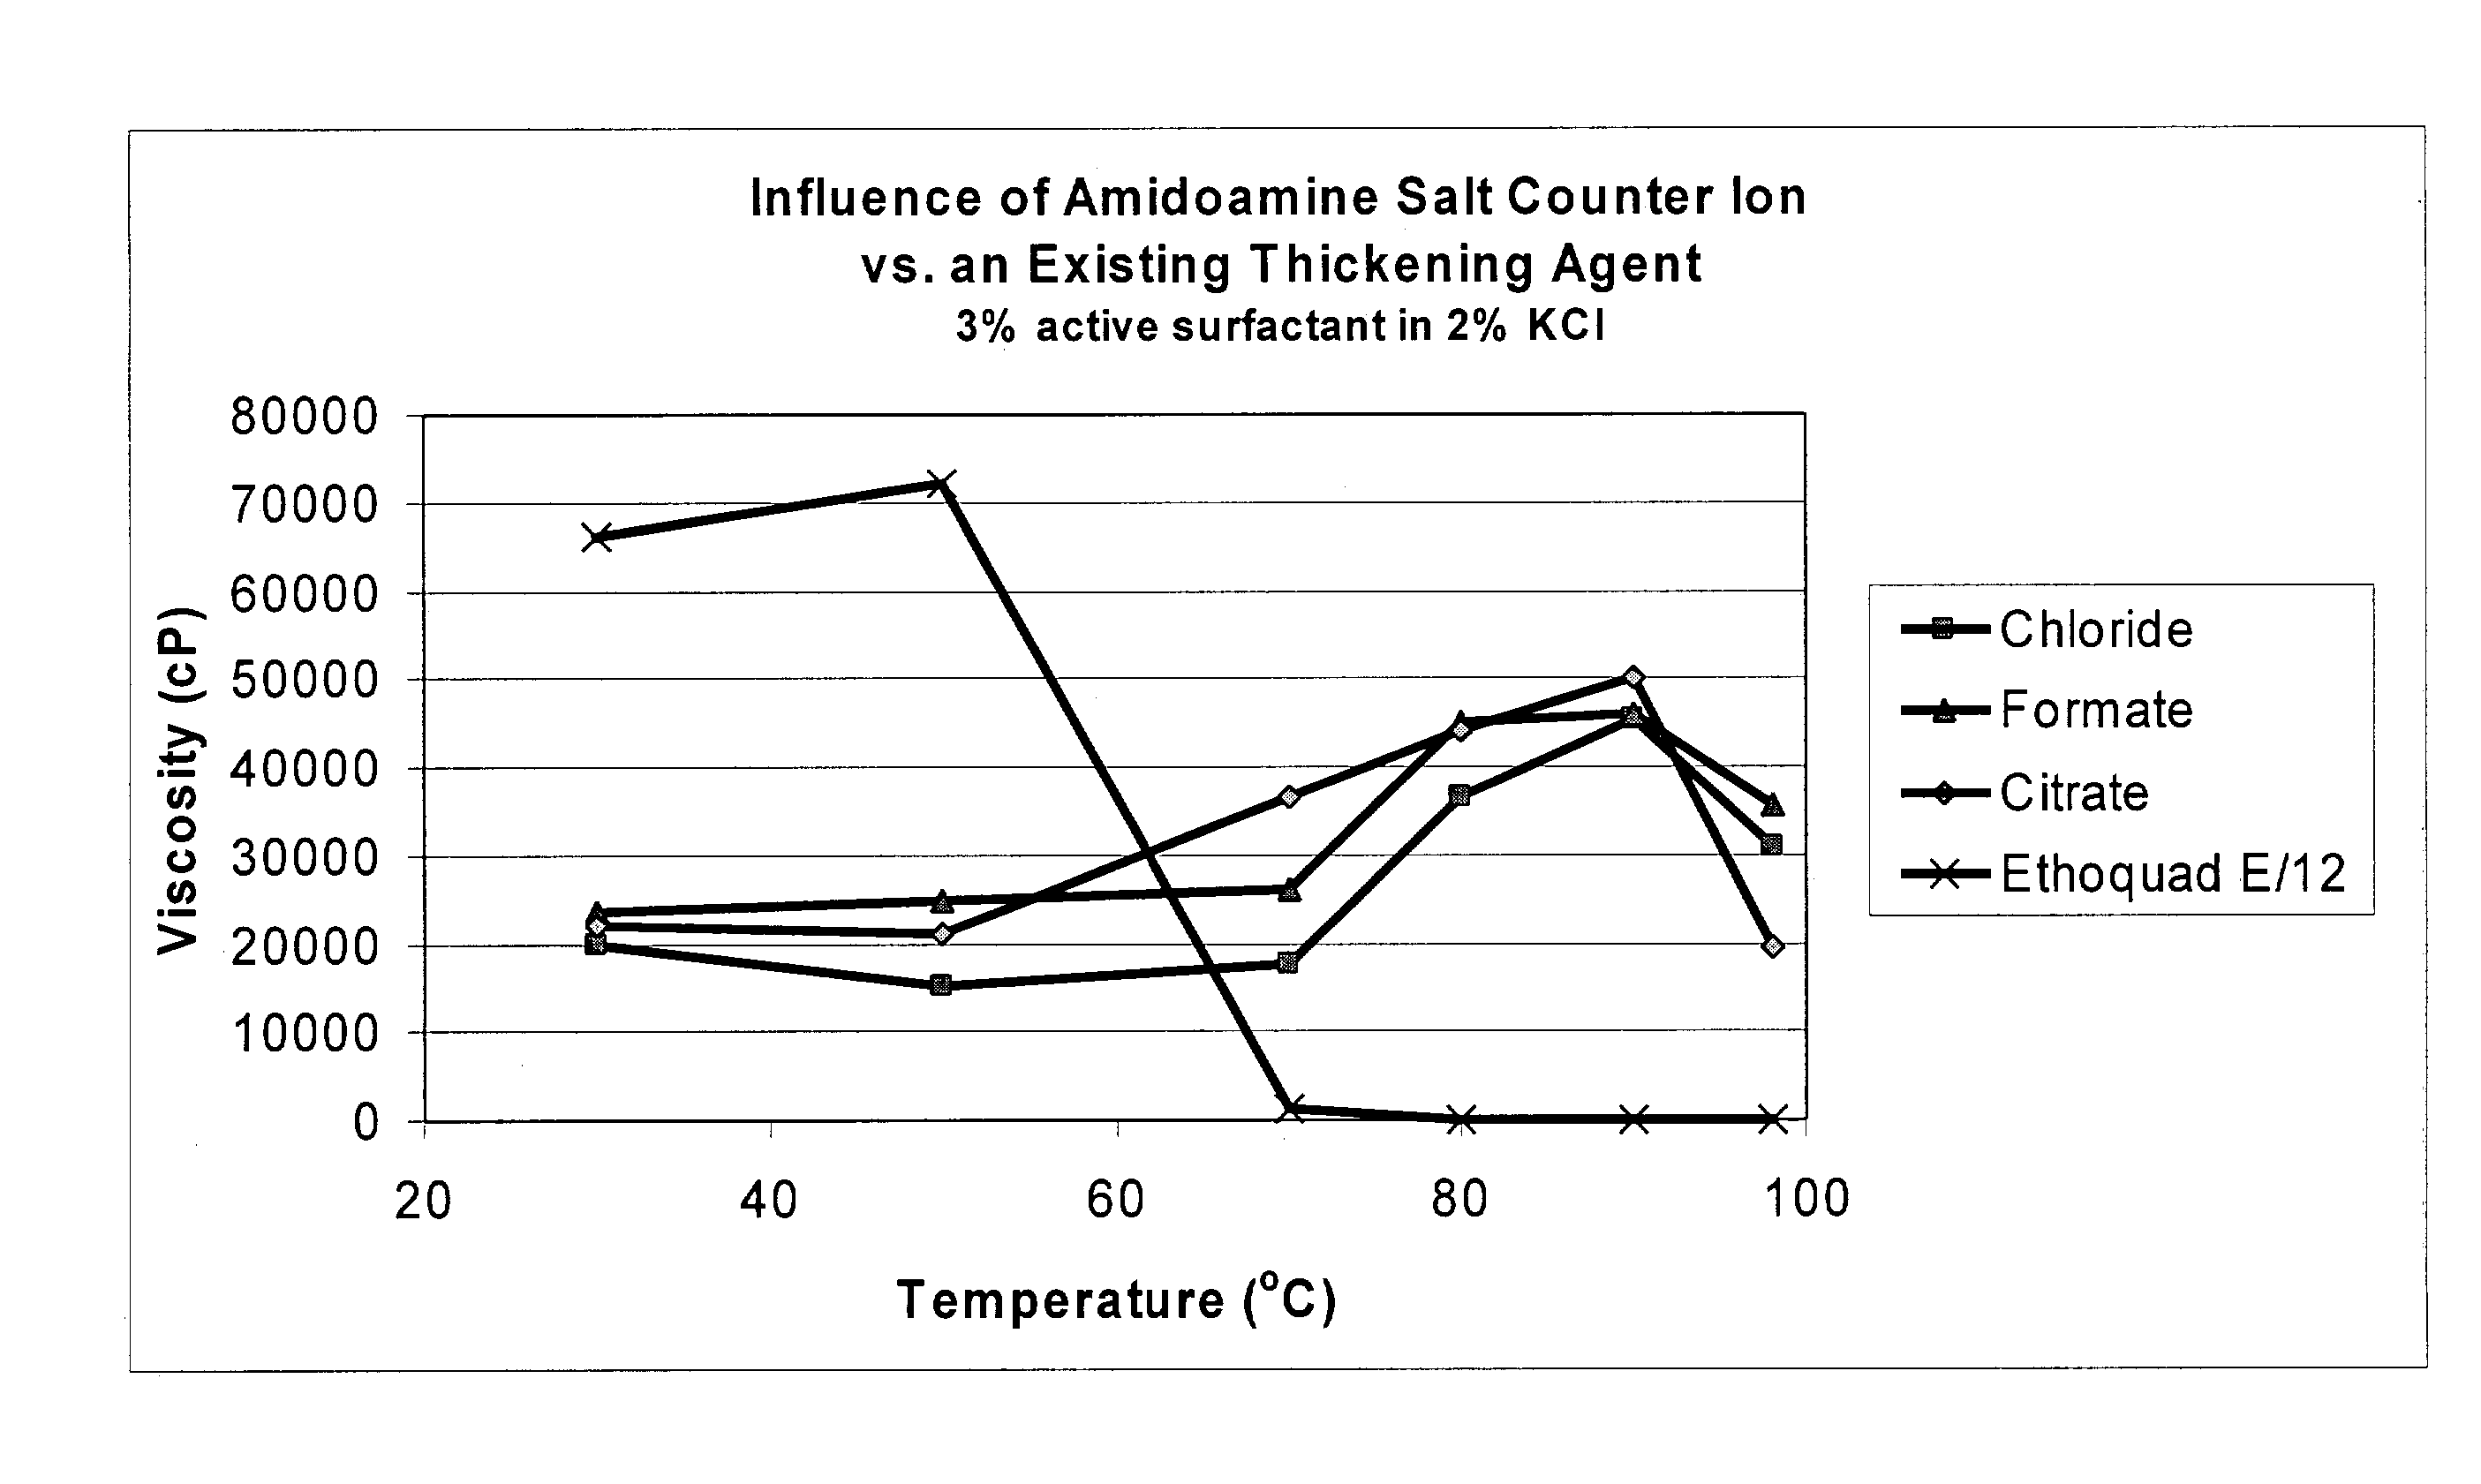 Amidoamine salt-based viscosifying agents and methods of use